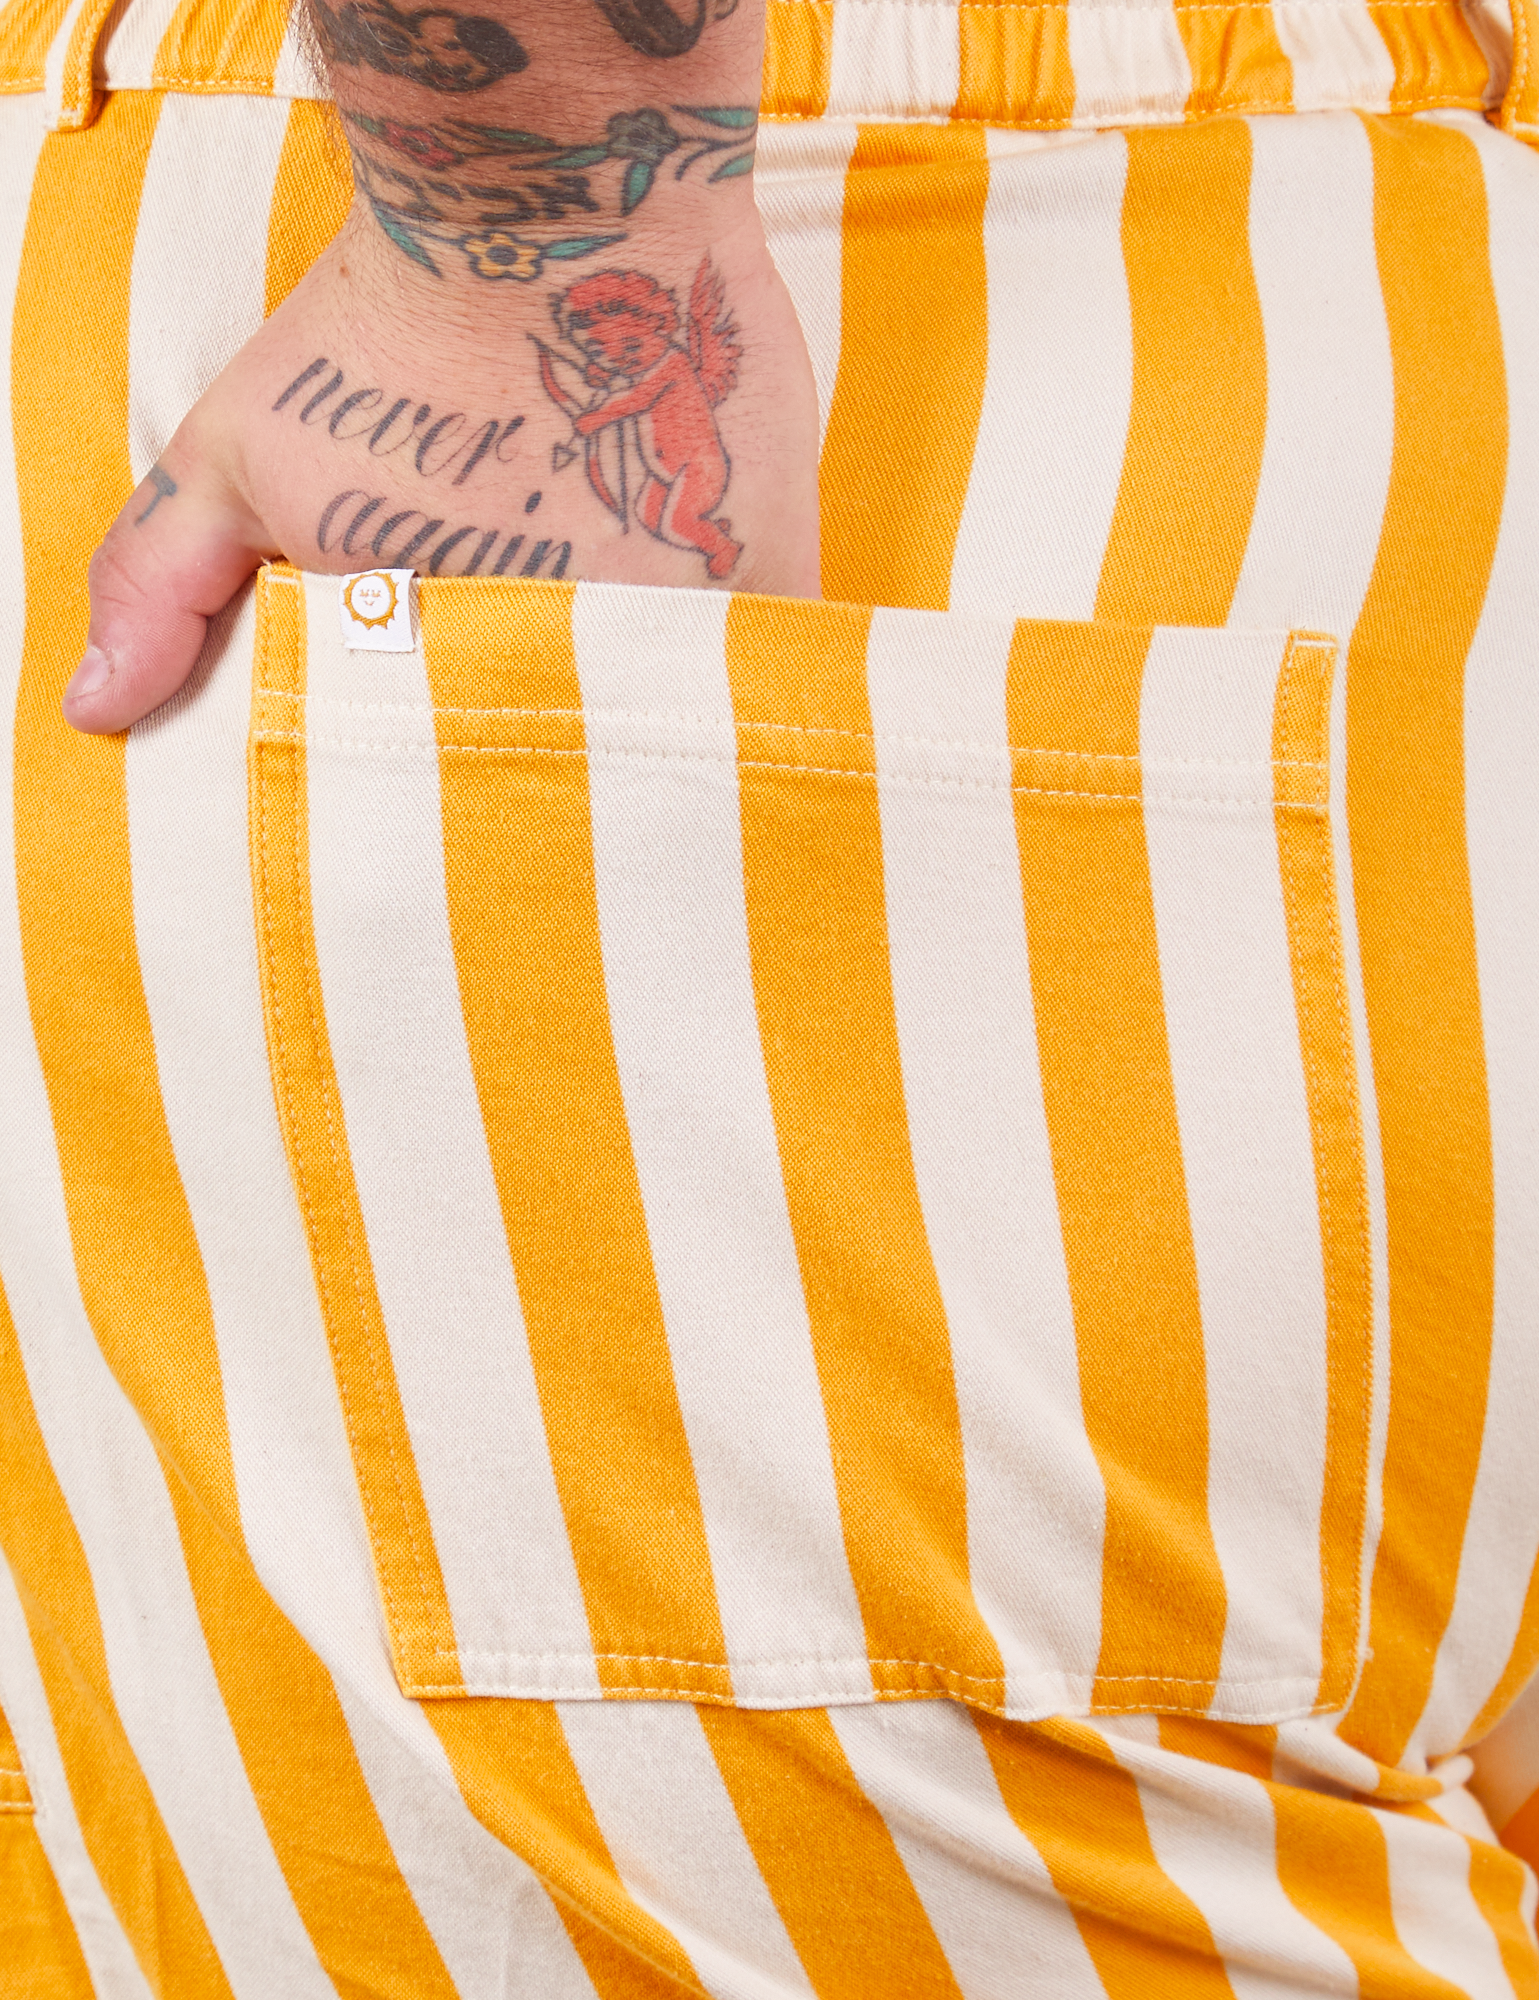 Lemon Stripe Jumpsuit back pocket close up. Sam has their hand in the pocket.